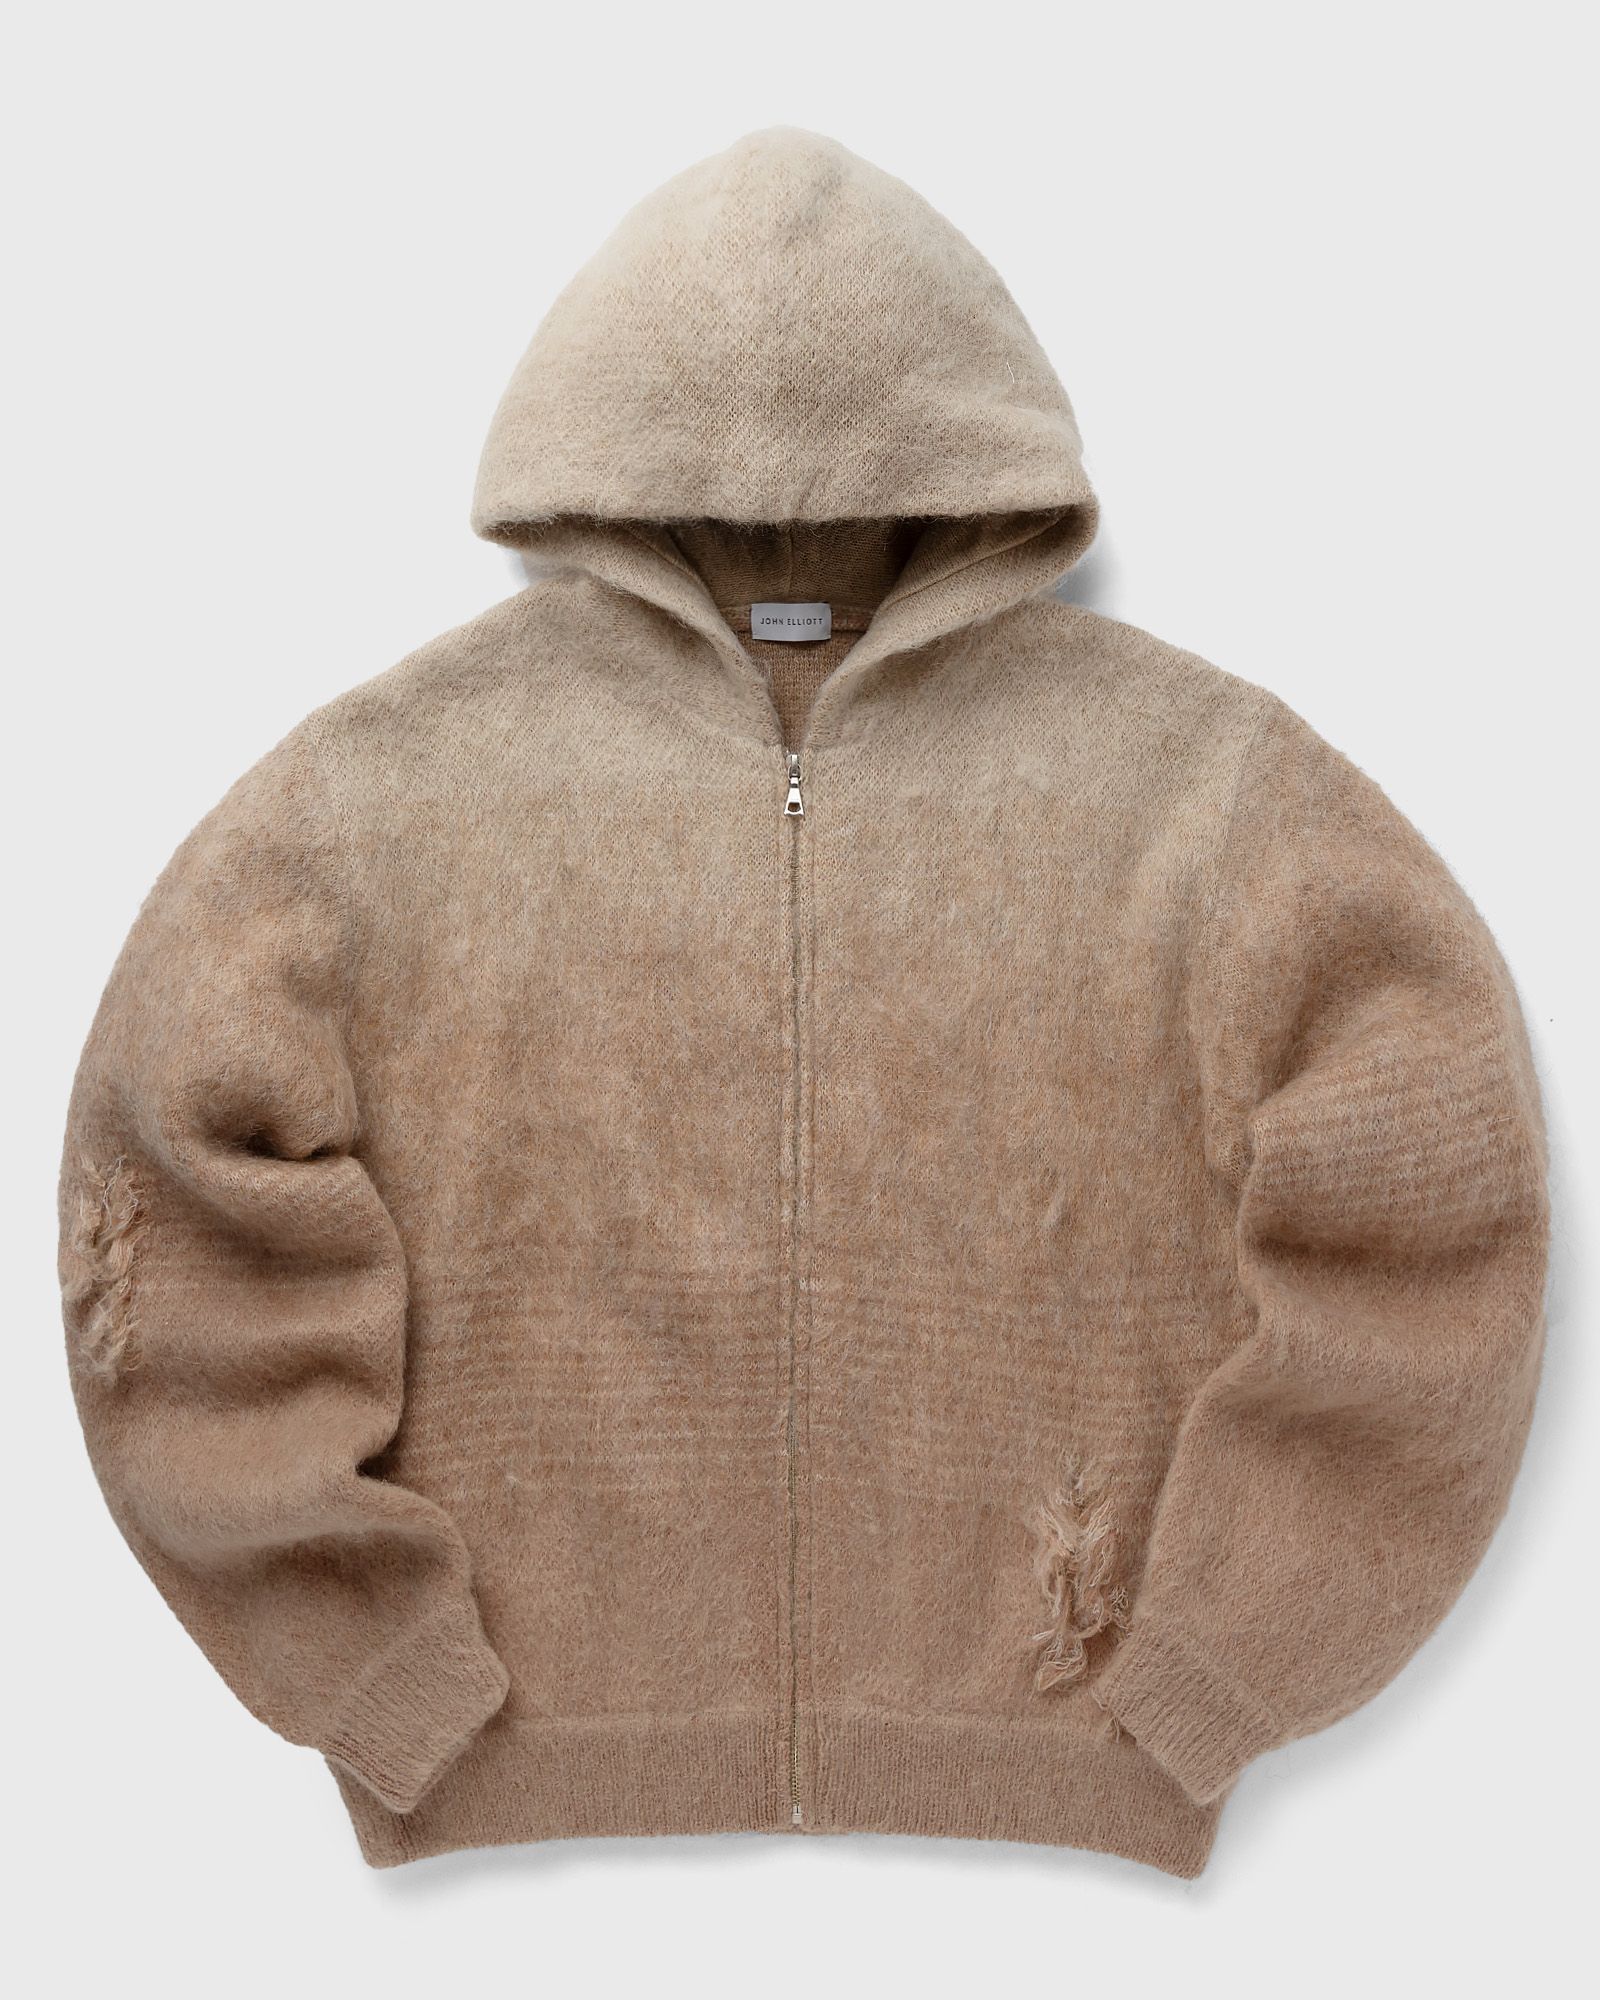 John Elliott - gradient mohair full-zip men hoodies|zippers brown in größe:l